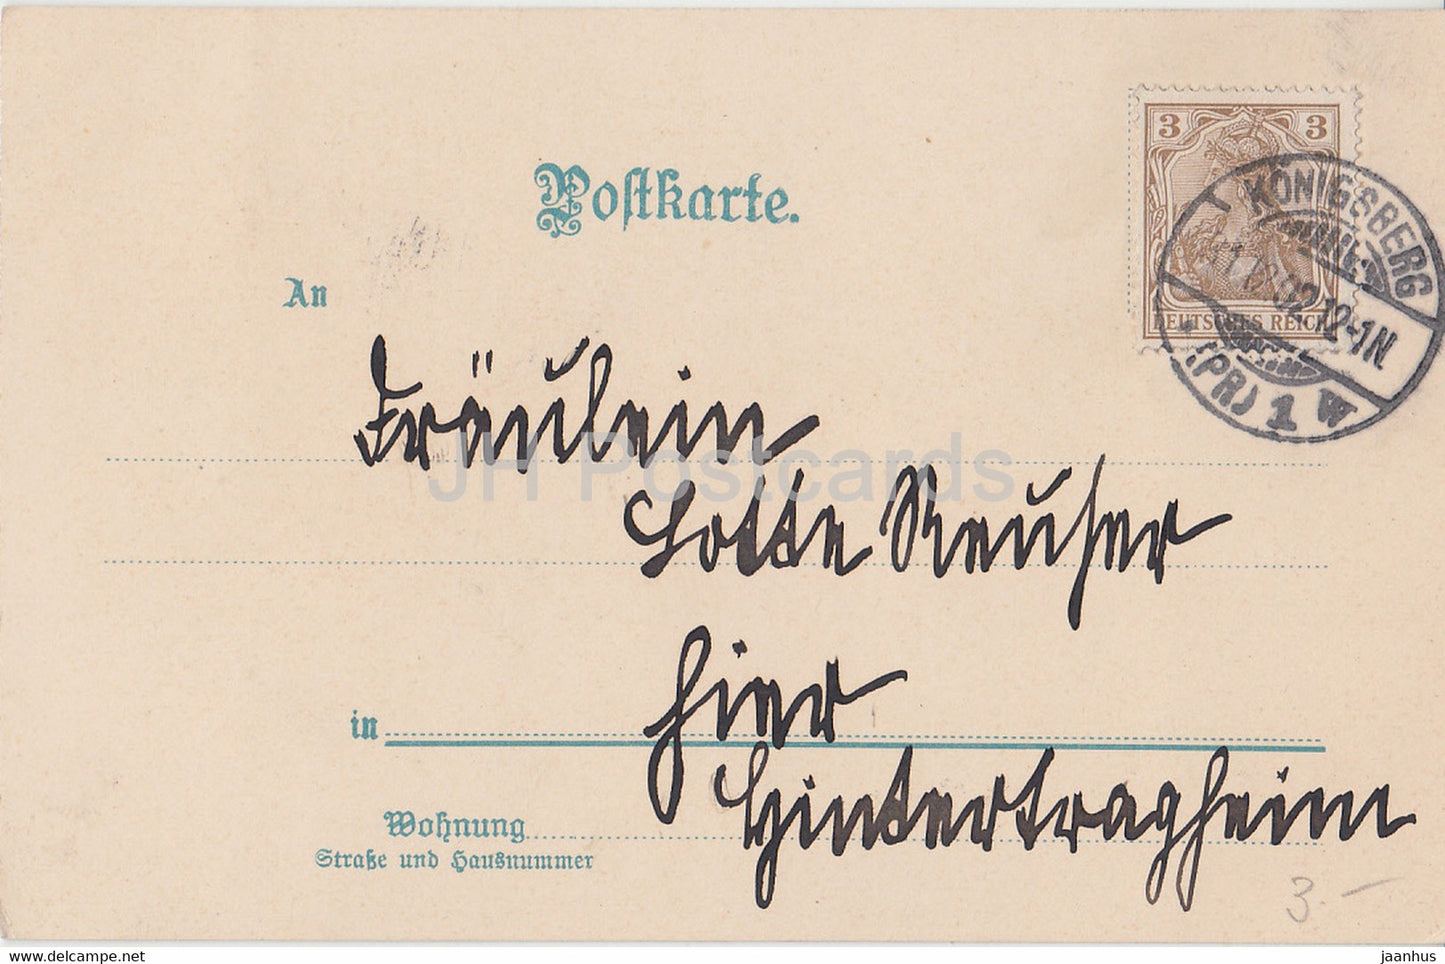 Neujahrsgrußkarte – Herzlichen Glückwunsch zum Neuen Jahr – Winter – Wassermühle alte Postkarte – 1902 – Deutschland – gebraucht